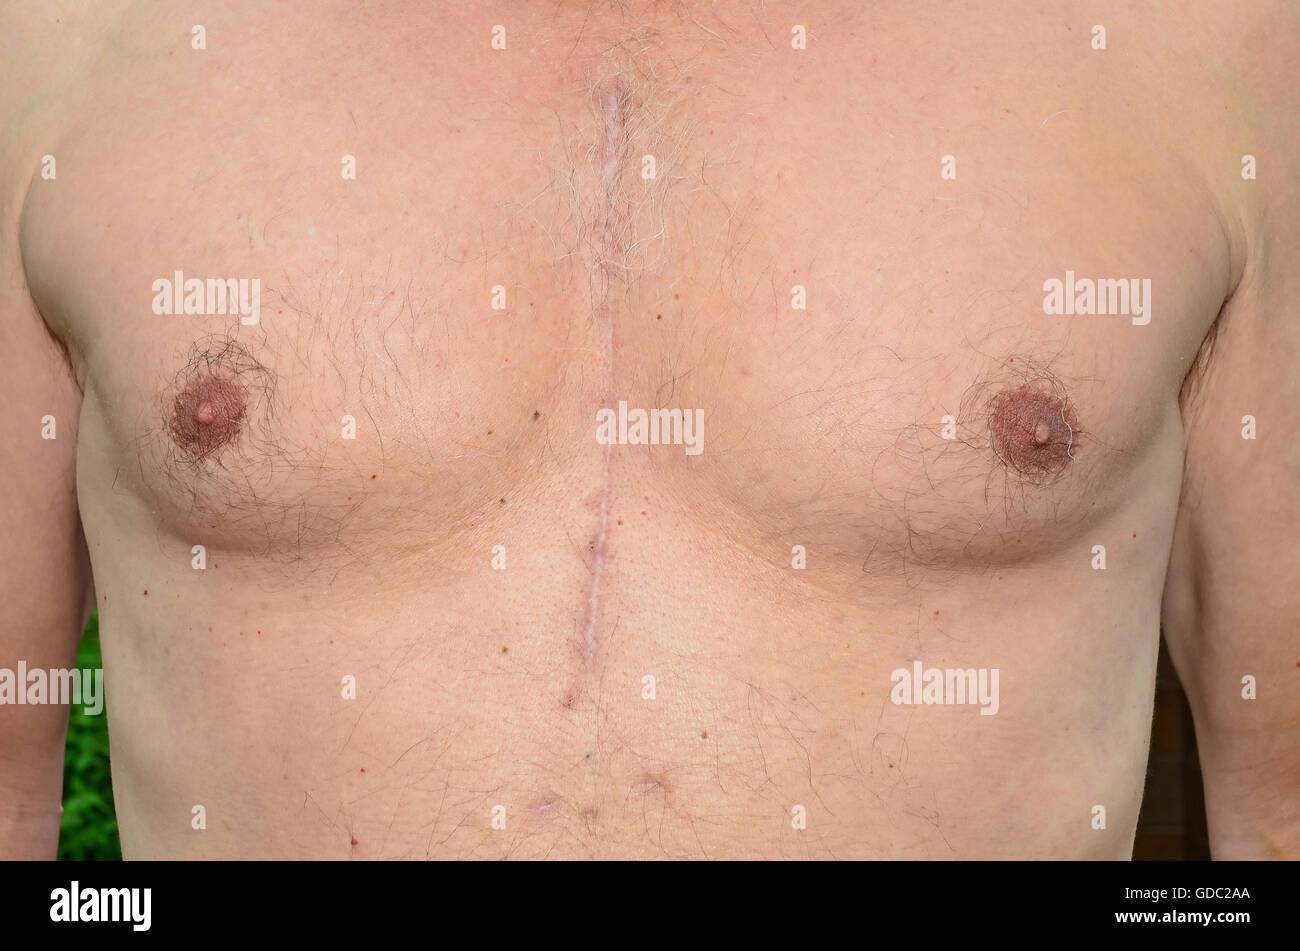 Brust eines Mannes, Operation am offenen Herzen 7 Monate zuvor erfahren hat, zeigt, wie die Narben verheilt sind. Stockfoto